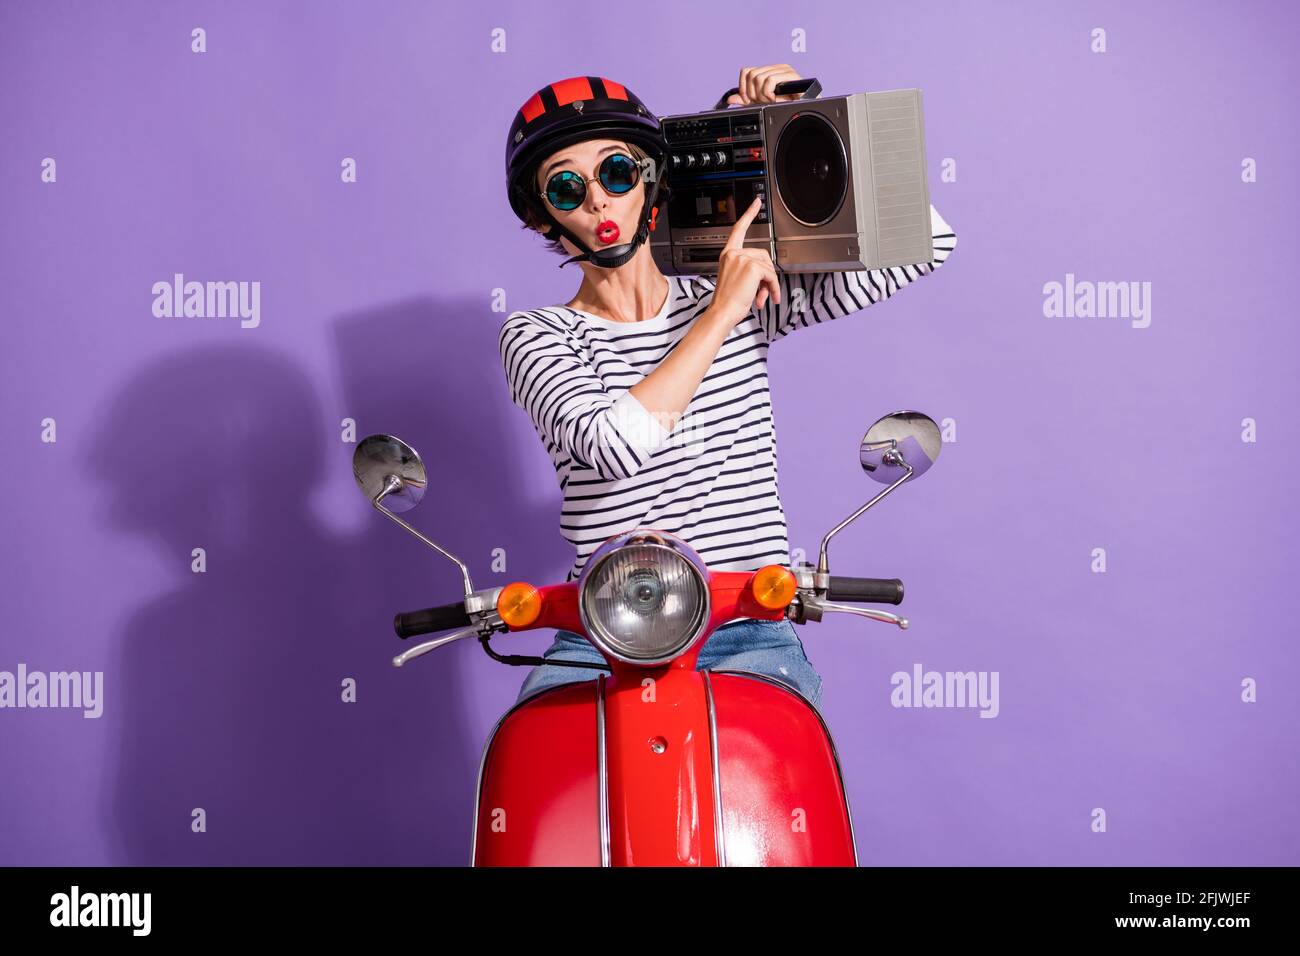 Portrait Foto von Mädchen in Helm Motorrad Drücken auf Taste Hören Musik  boombox Pfeifen Zeichen isoliert auf lebendigen lila Hintergrund  Stockfotografie - Alamy